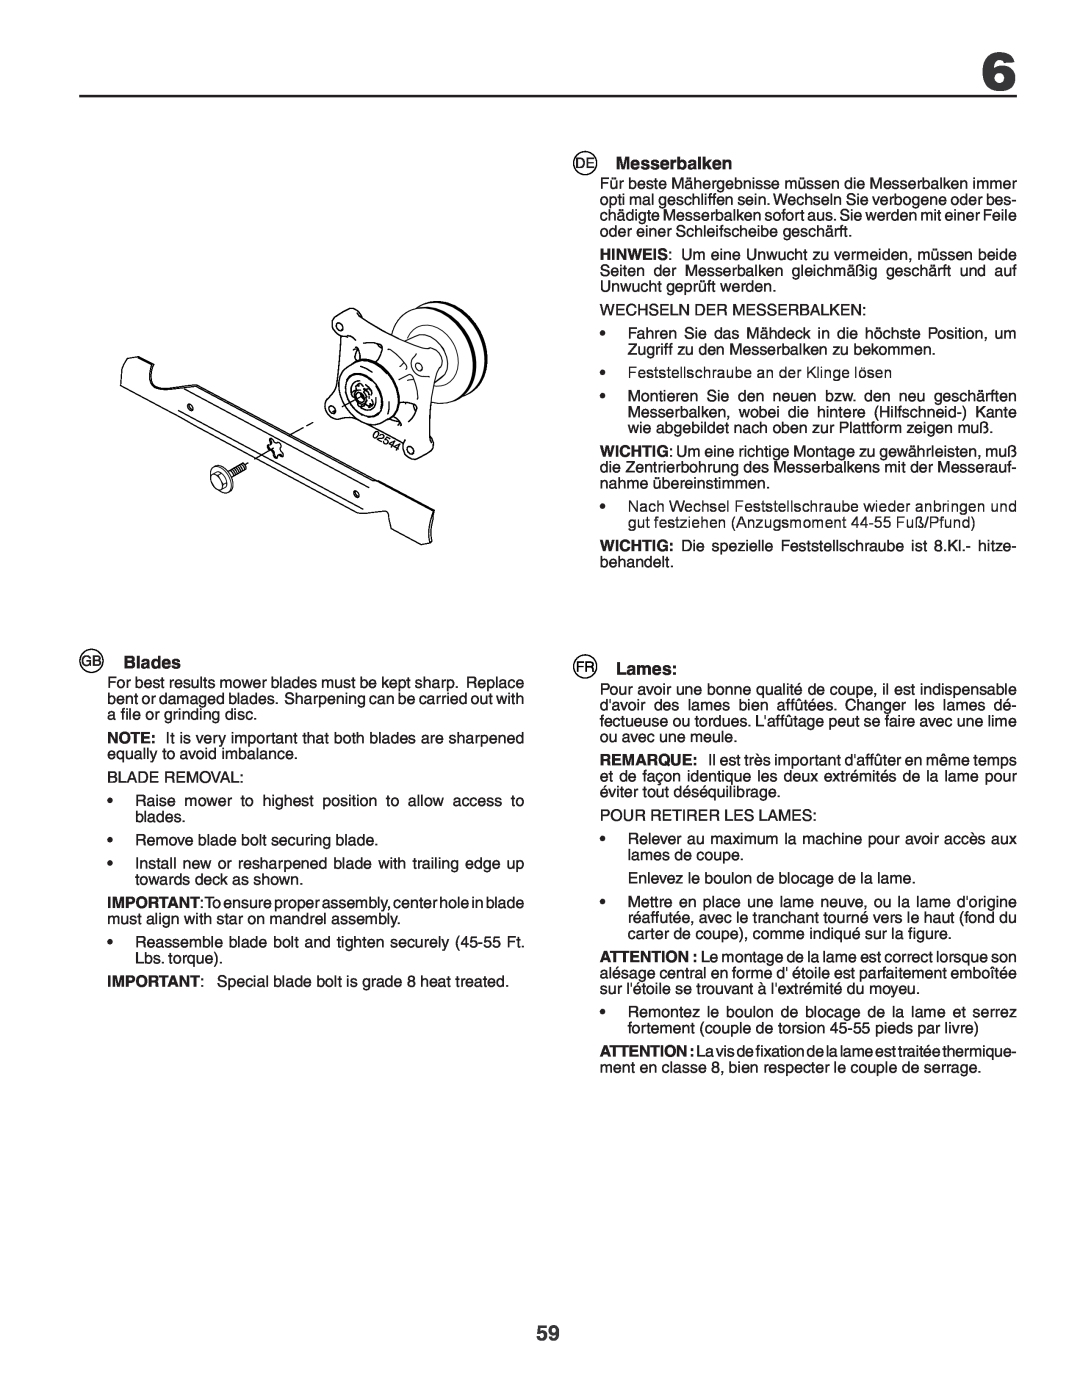 Husqvarna GTH260XP instruction manual Blades, Messerbalken, Lames 